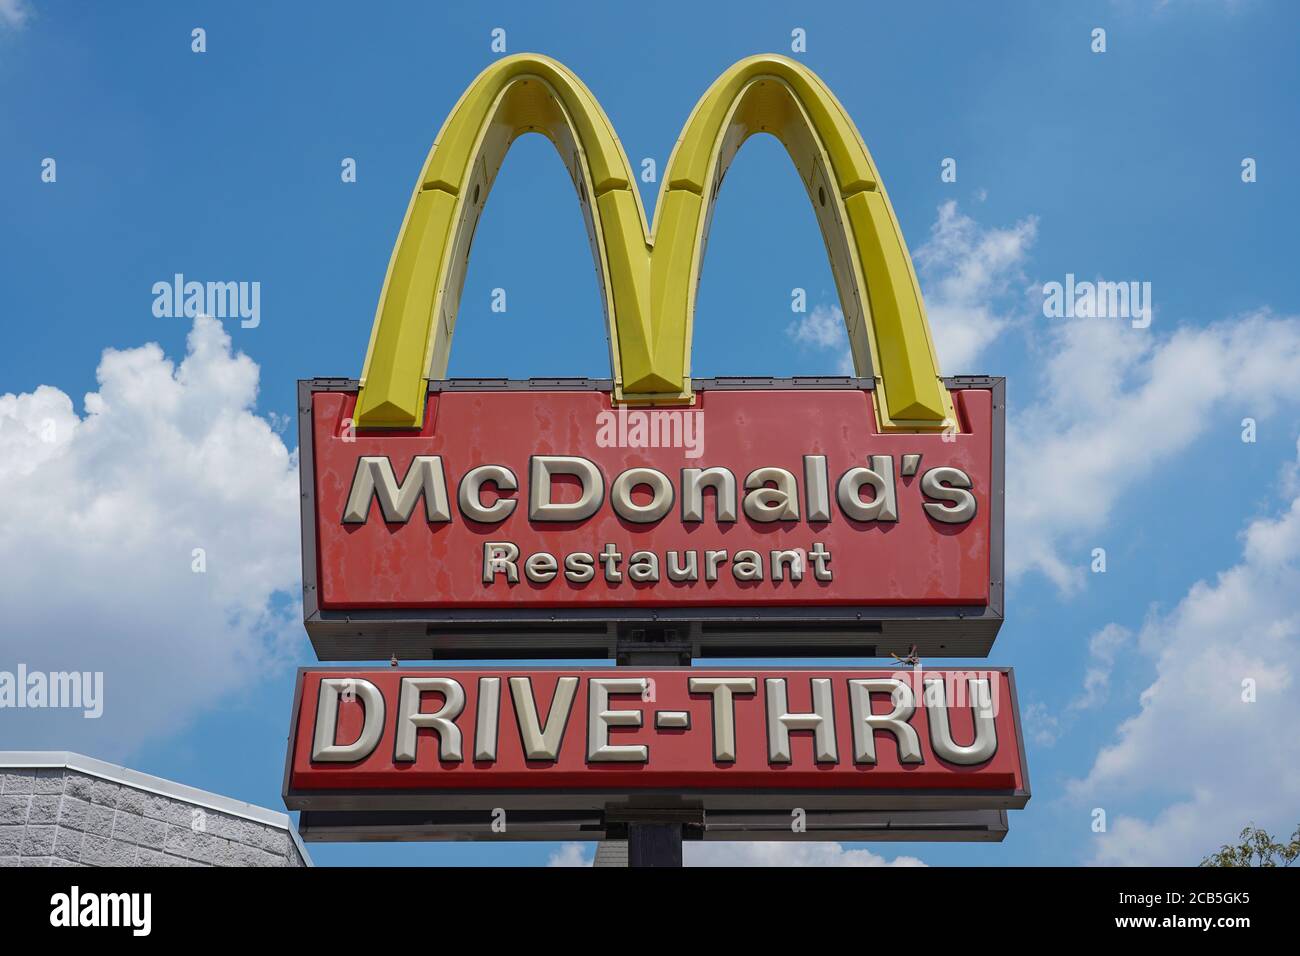 Una vista del McDonald's Restaurant in Queens Borough di New York City.McDonald's piani di assumere 260,000 persone questa estate negli Stati Uniti come inizia a riprendere le normali operazioni. McDonald's sta sperimentando un rimbalzo nelle vendite e nella domanda. Le sue vendite statunitensi sono scese del 19% nel mese di aprile rispetto allo stesso periodo dell'anno precedente, ma sono scese di appena il 5% anno su anno nel mese di maggio. Tali numeri includono le vendite in tutte le sedi che sono state operative da almeno 13 mesi, anche se i ristoranti sono stati temporaneamente chiusi durante la pandemia. Foto Stock